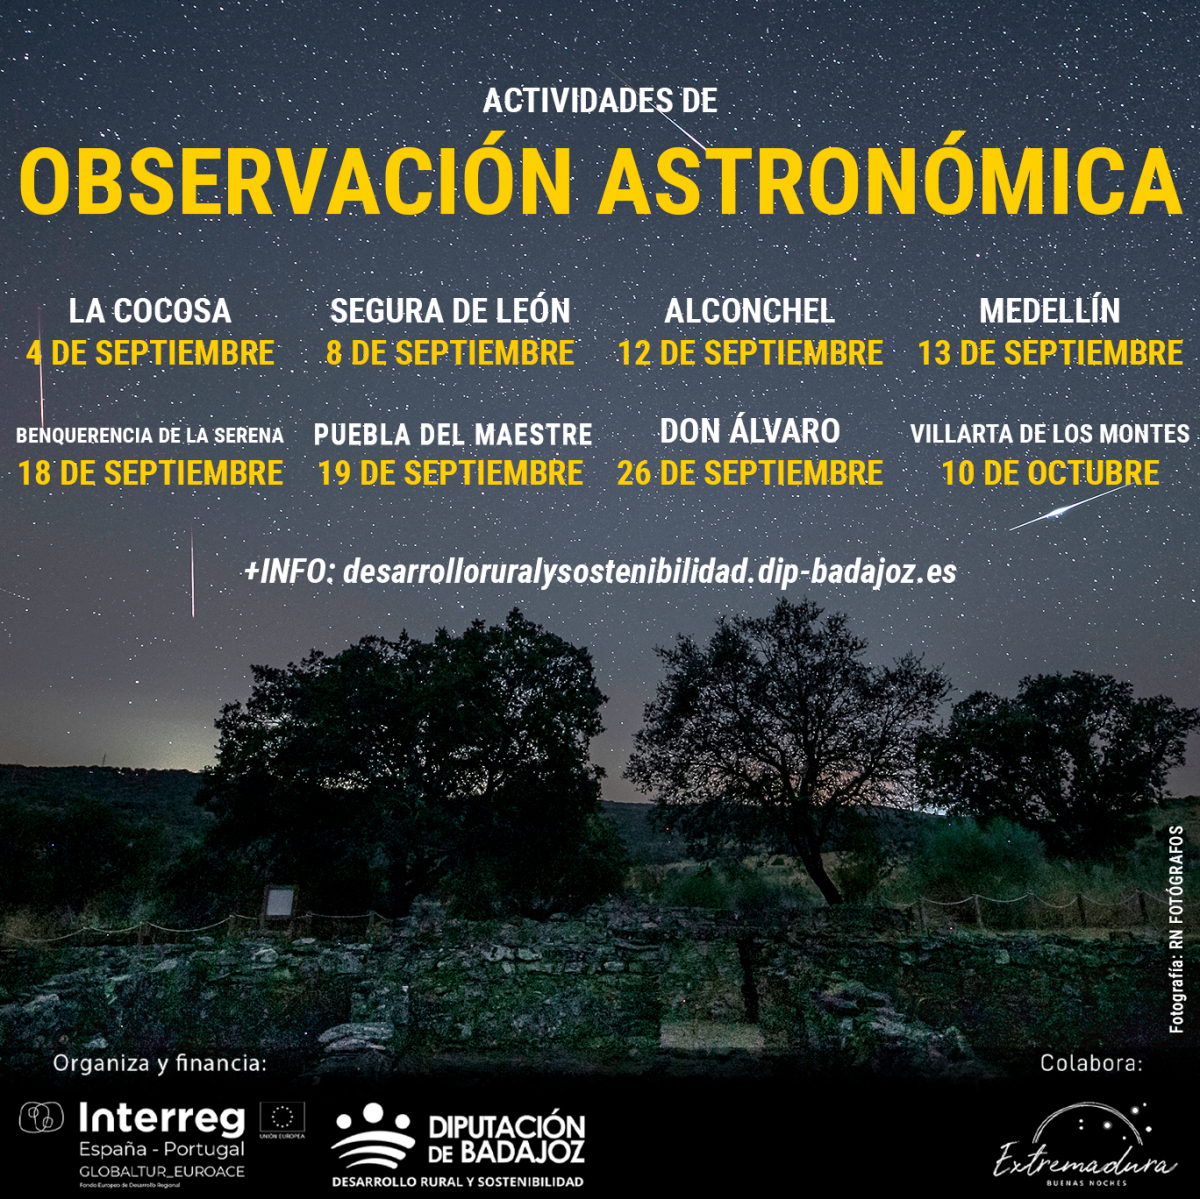 La Diputación de Badajoz organiza actividades de observación astronómica en diferentes comarcas de la provincia